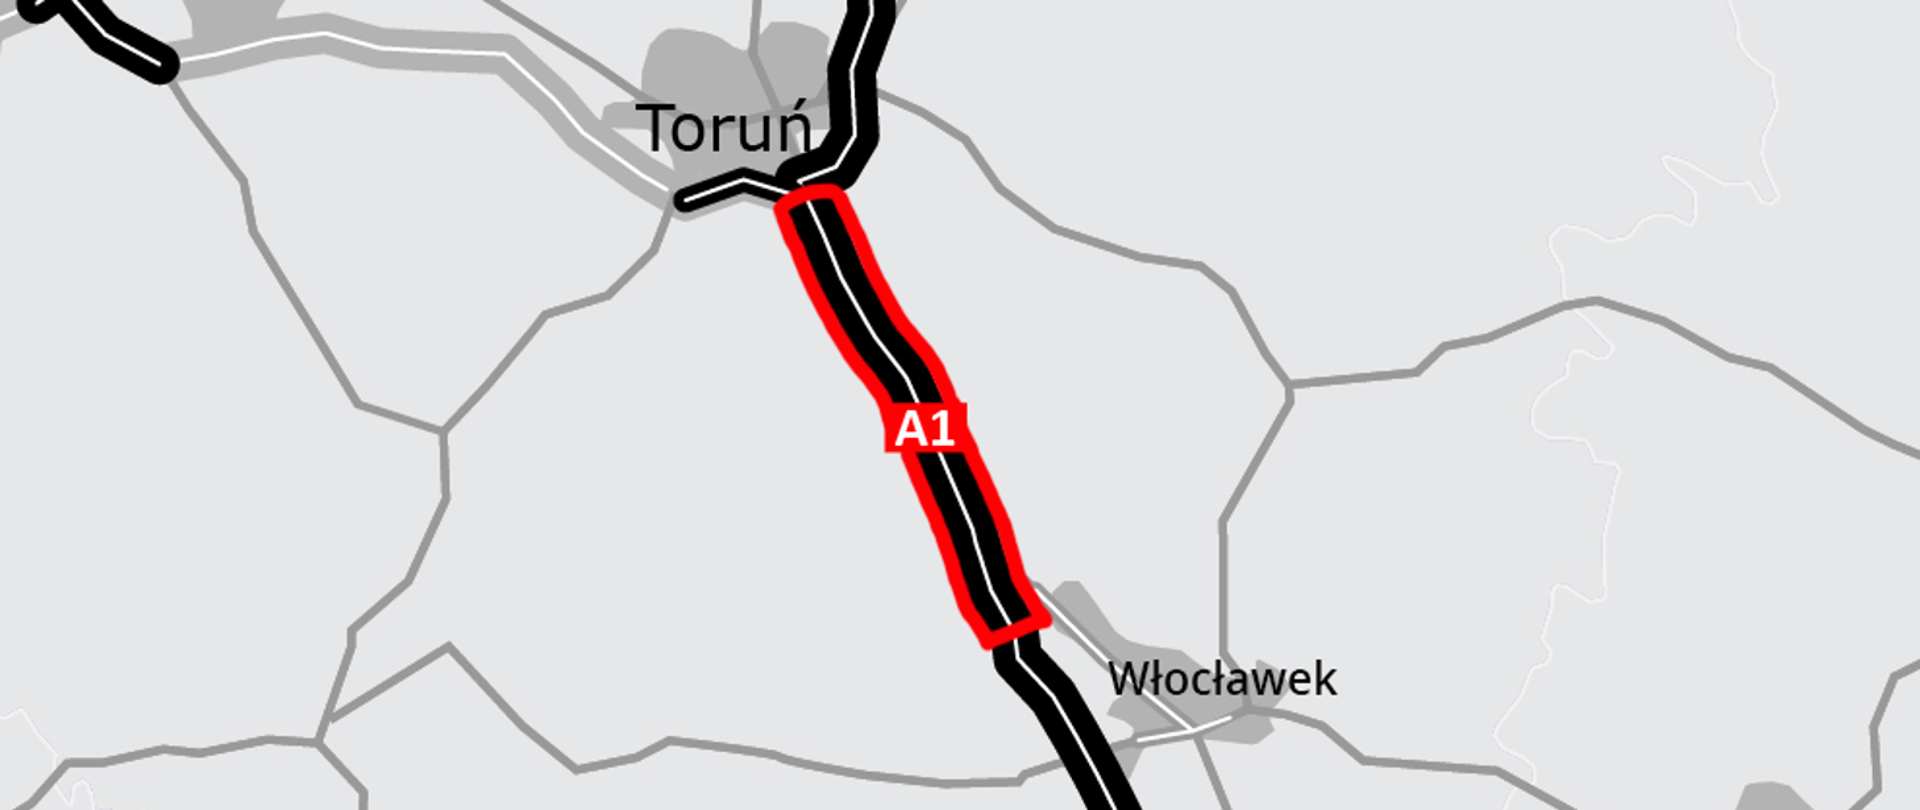 Wycinek mapy Polski pomiędzy Toruniem i Włocławkiem z zaznaczonym odcinkiem autostrady A1, który zostanie rozbudowany o dodatkowy pas ruchu.